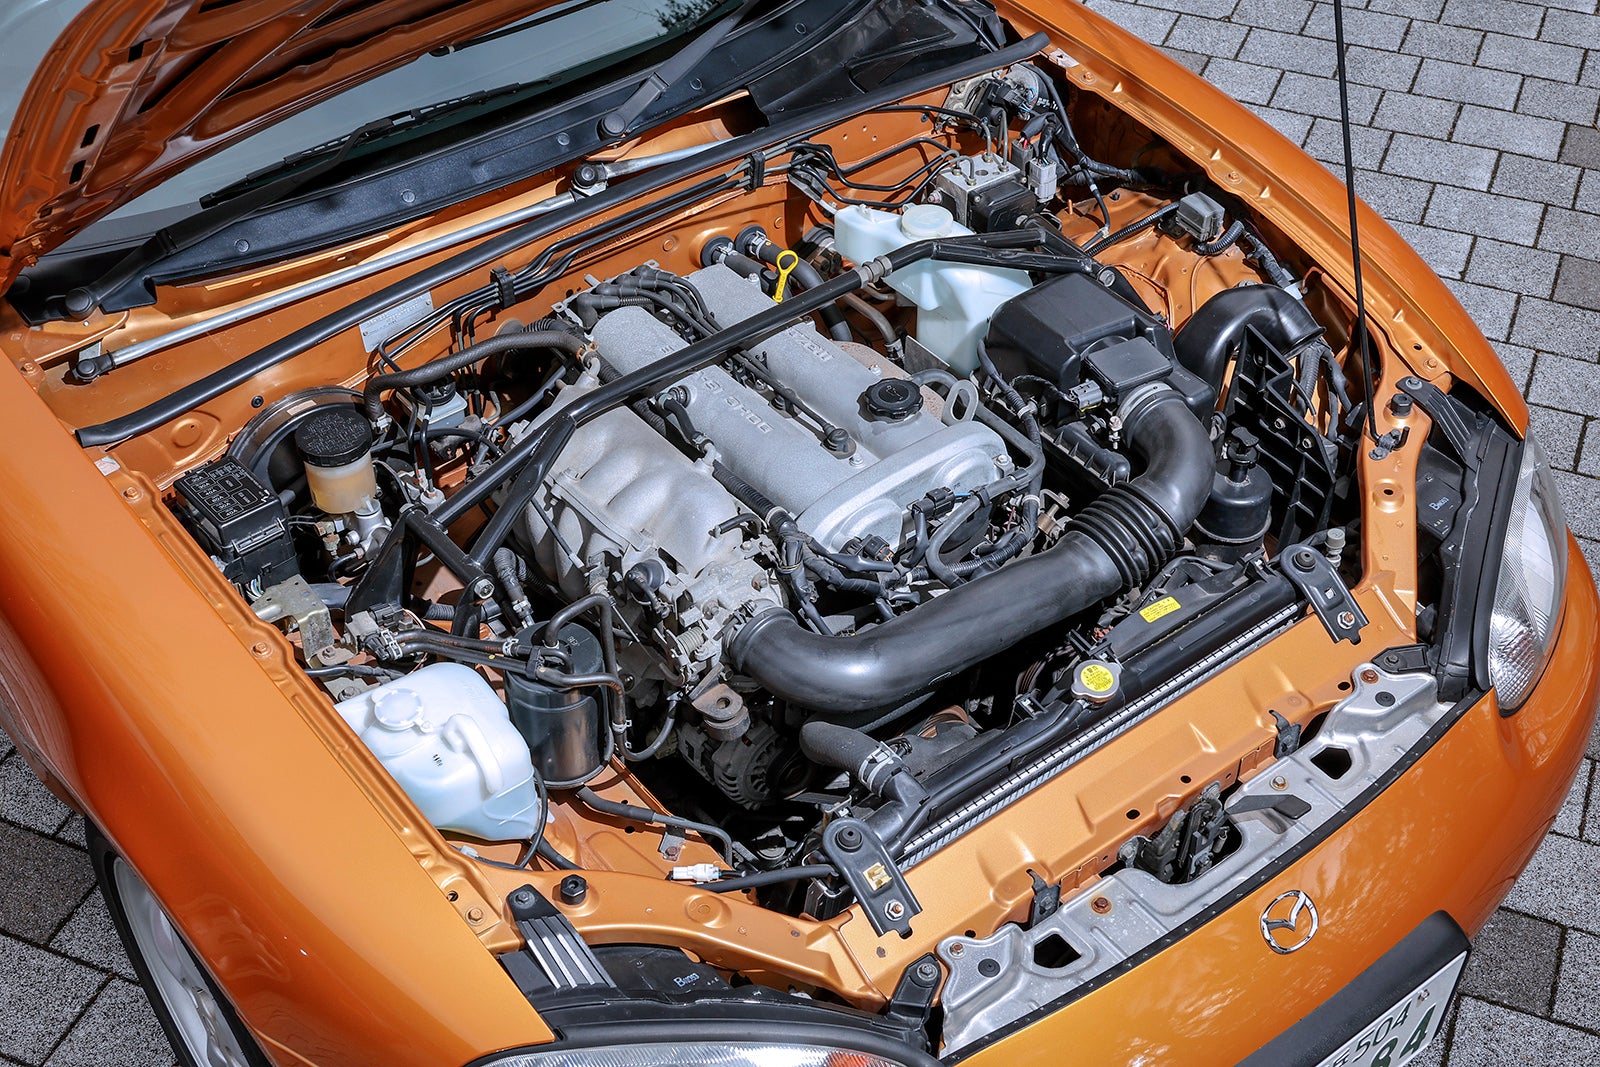 RSに搭載される1.8リッターのBP-ZE（RS）型エンジンは最大出力145馬力。フロントサスタワーバーはRSだけの標準装備となる。